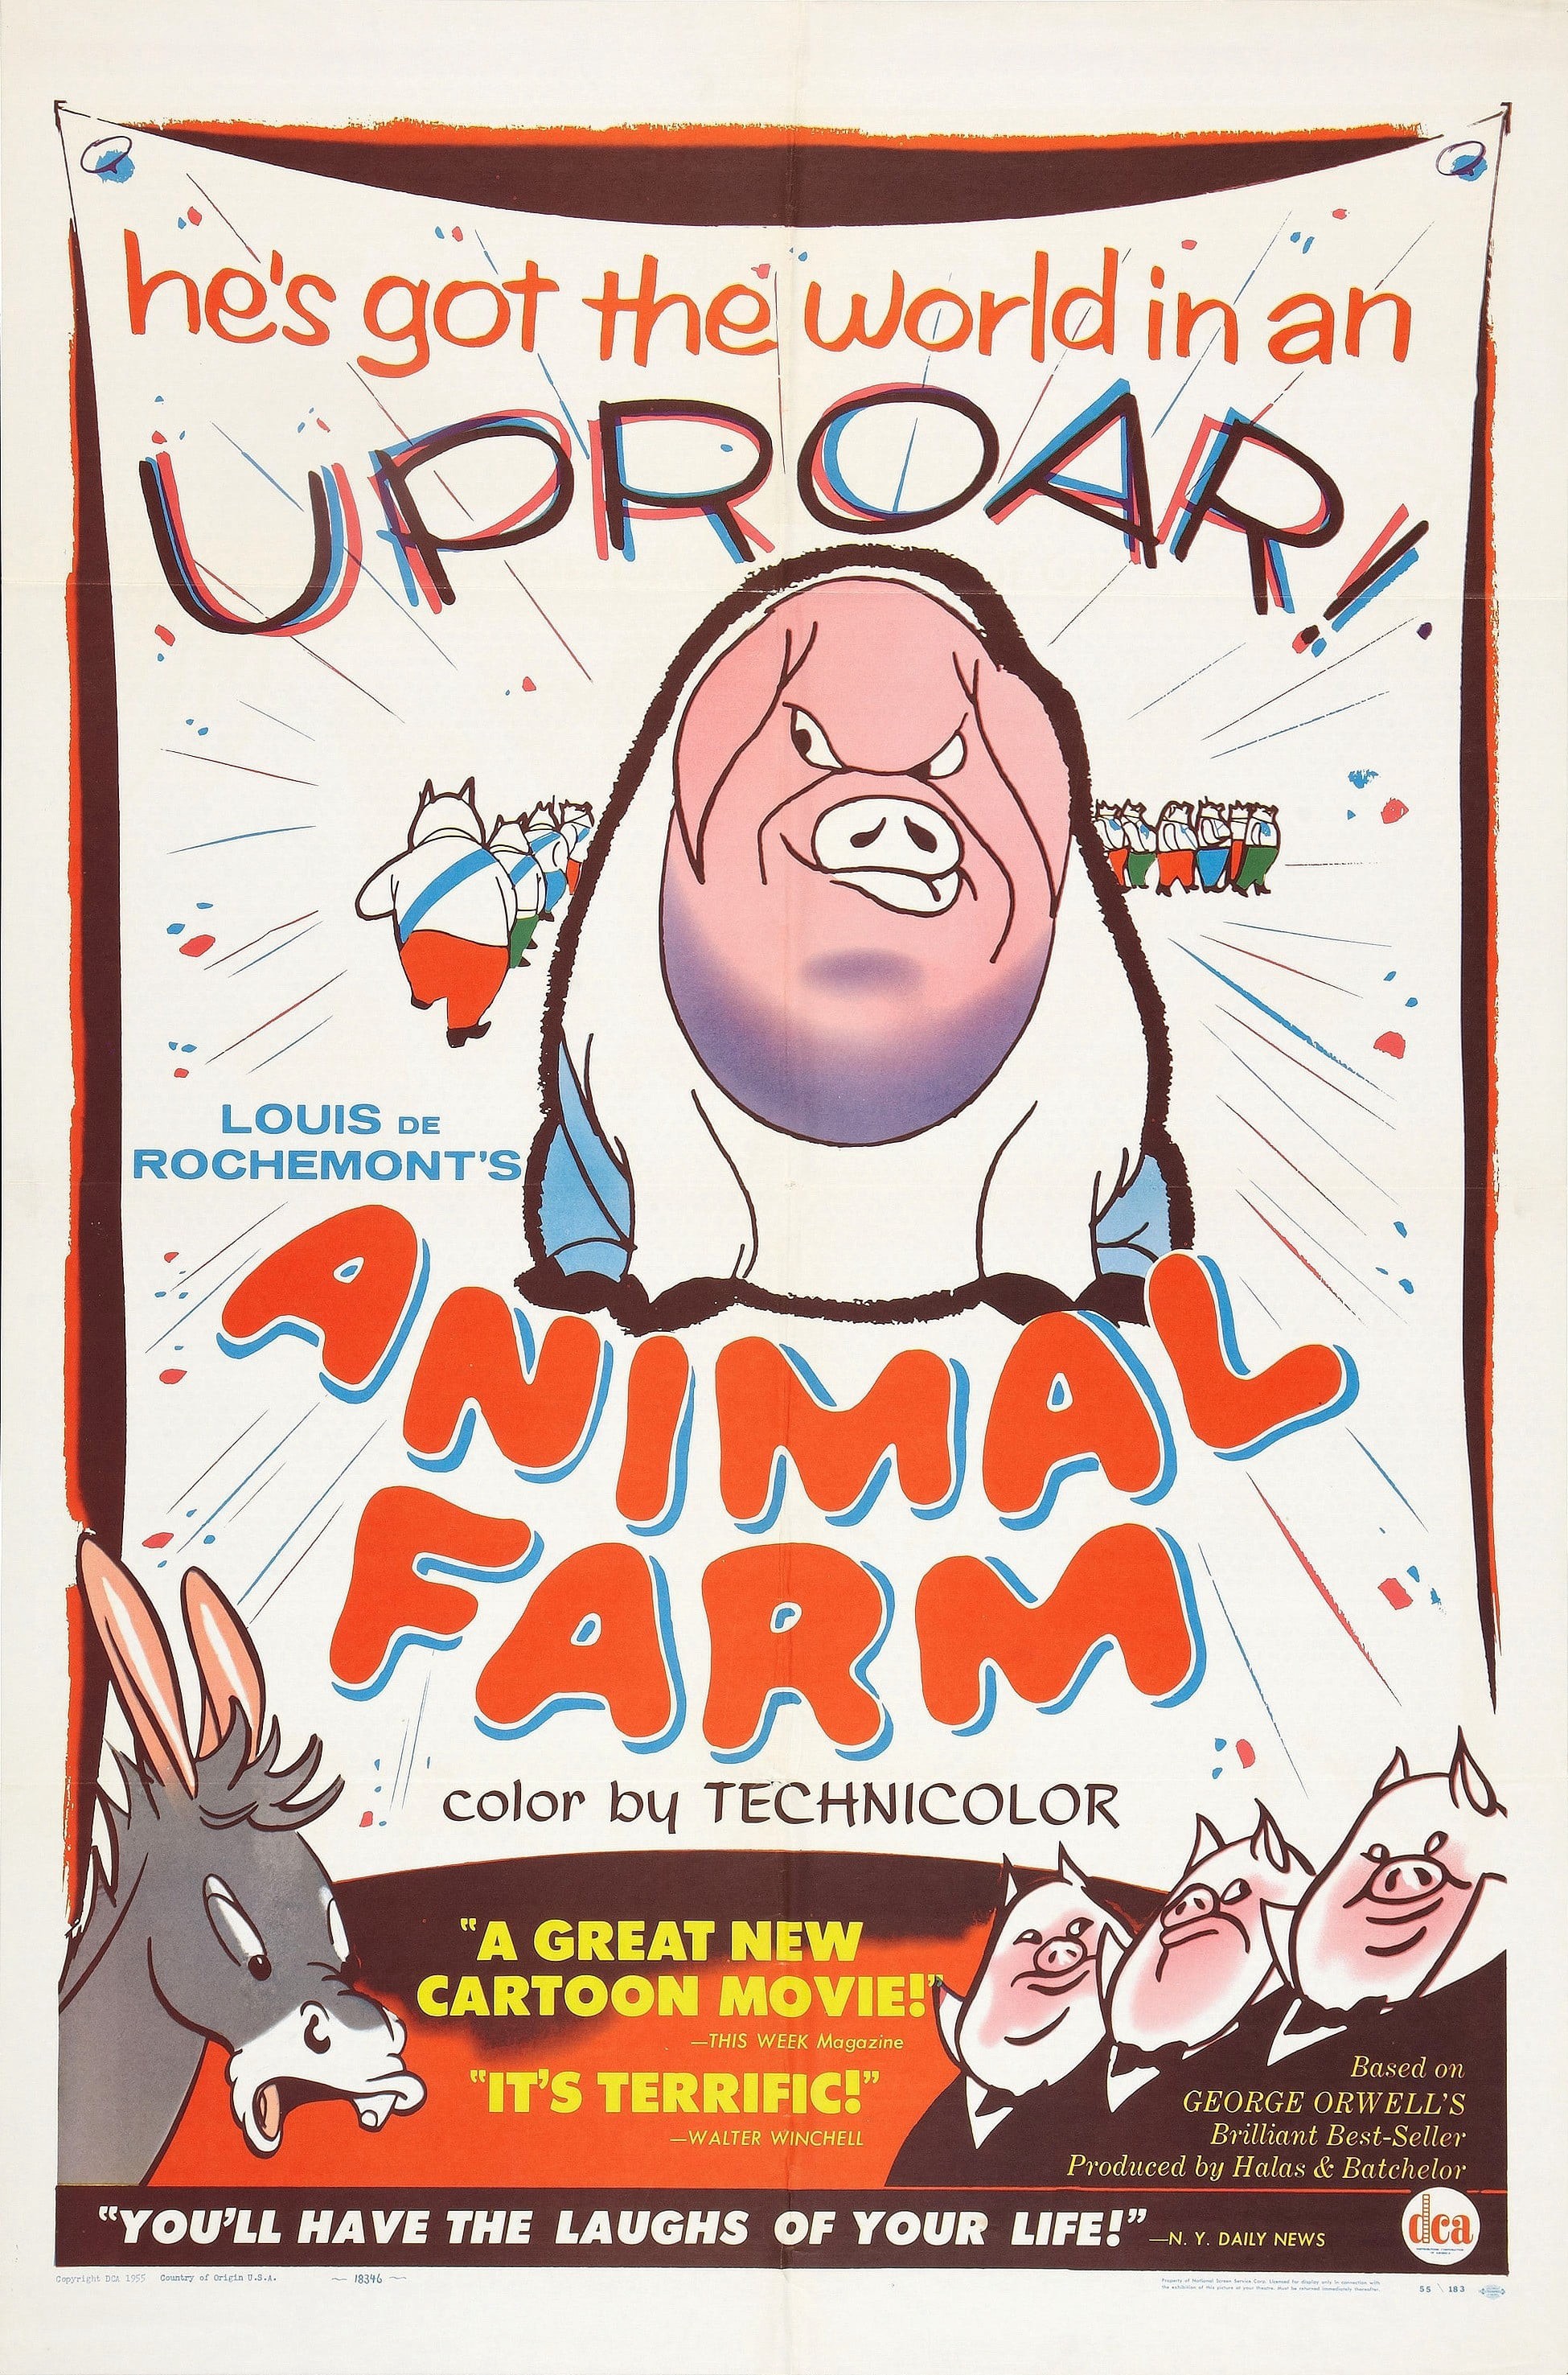 Animal Farm - Animal Farm